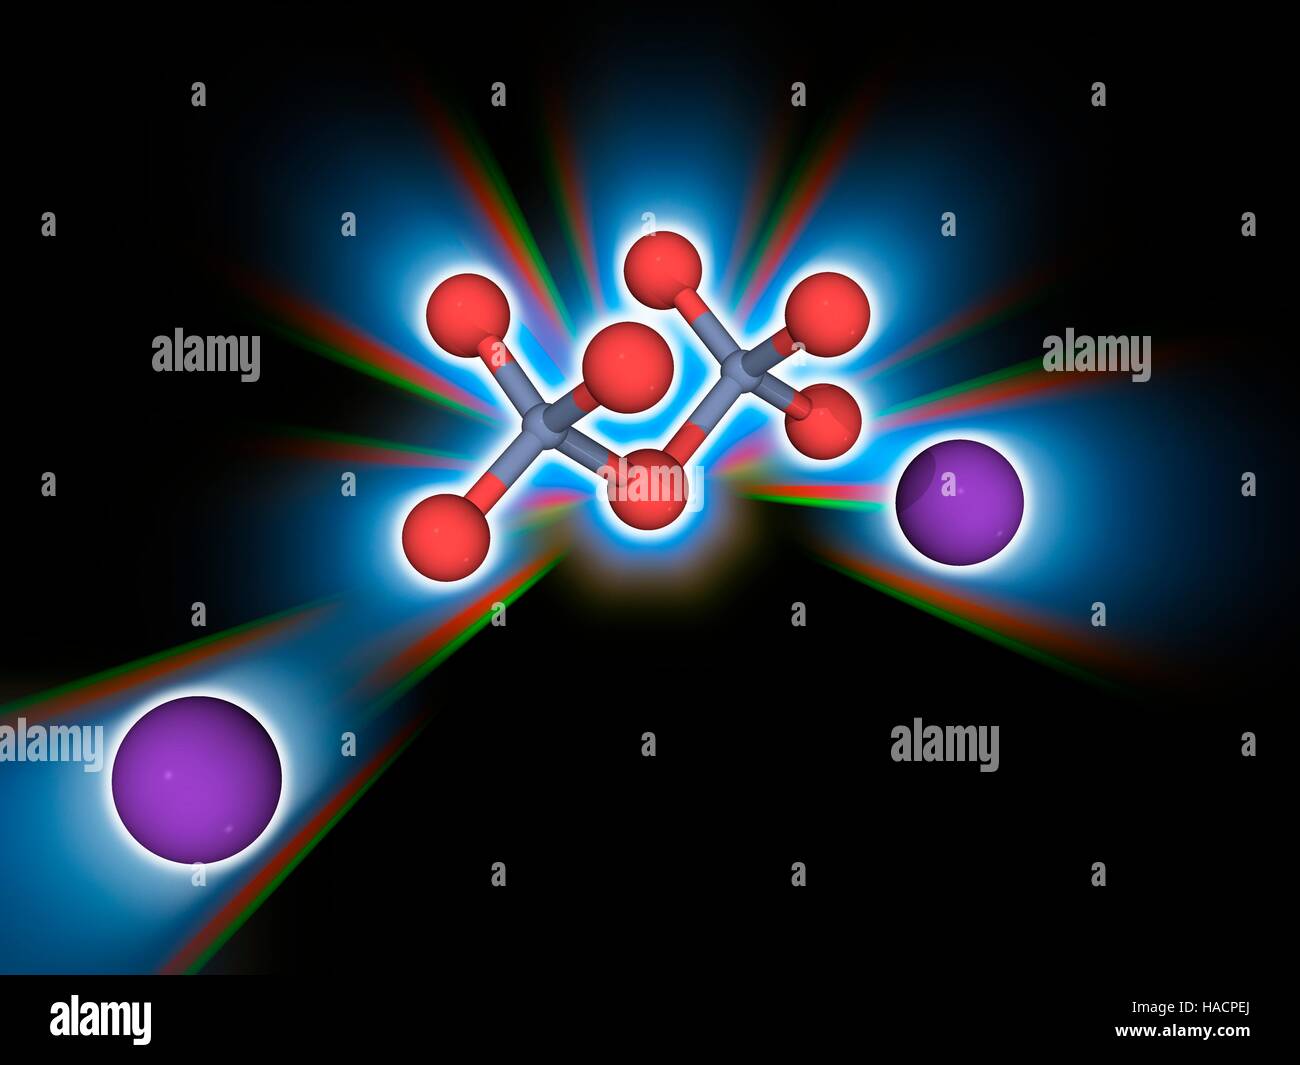 Il bicromato di potassio. Il modello molecolare del composto chimico di bicromato di potassio (K2.Cr2.O7). Questo composto ionico è più comunemente utilizzato come agente ossidante. Ha un colore rosso-arancio, e viene utilizzato anche come un colorante e un indicatore chimico. Gli atomi sono rappresentati da sfere e sono codificati a colori: cromo (grigio), Ossigeno (rosso) e potassio (viola). Illustrazione. Foto Stock